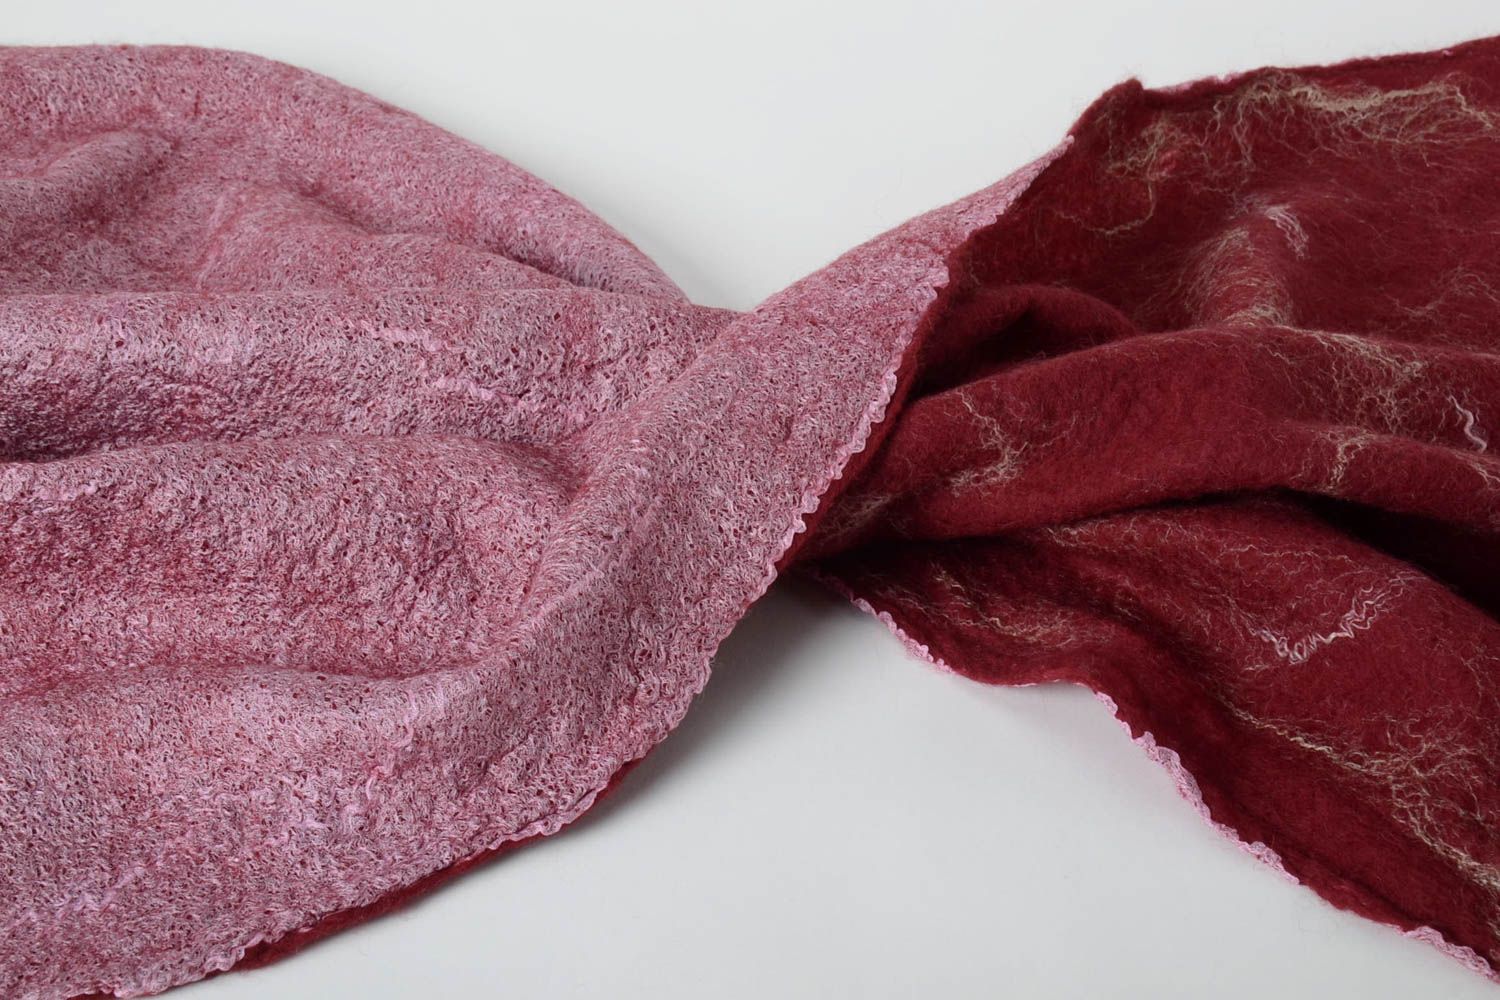 Handmade gefilzter Schal Frauen Accessoire Geschenk für Frau Damen Schal toll foto 5